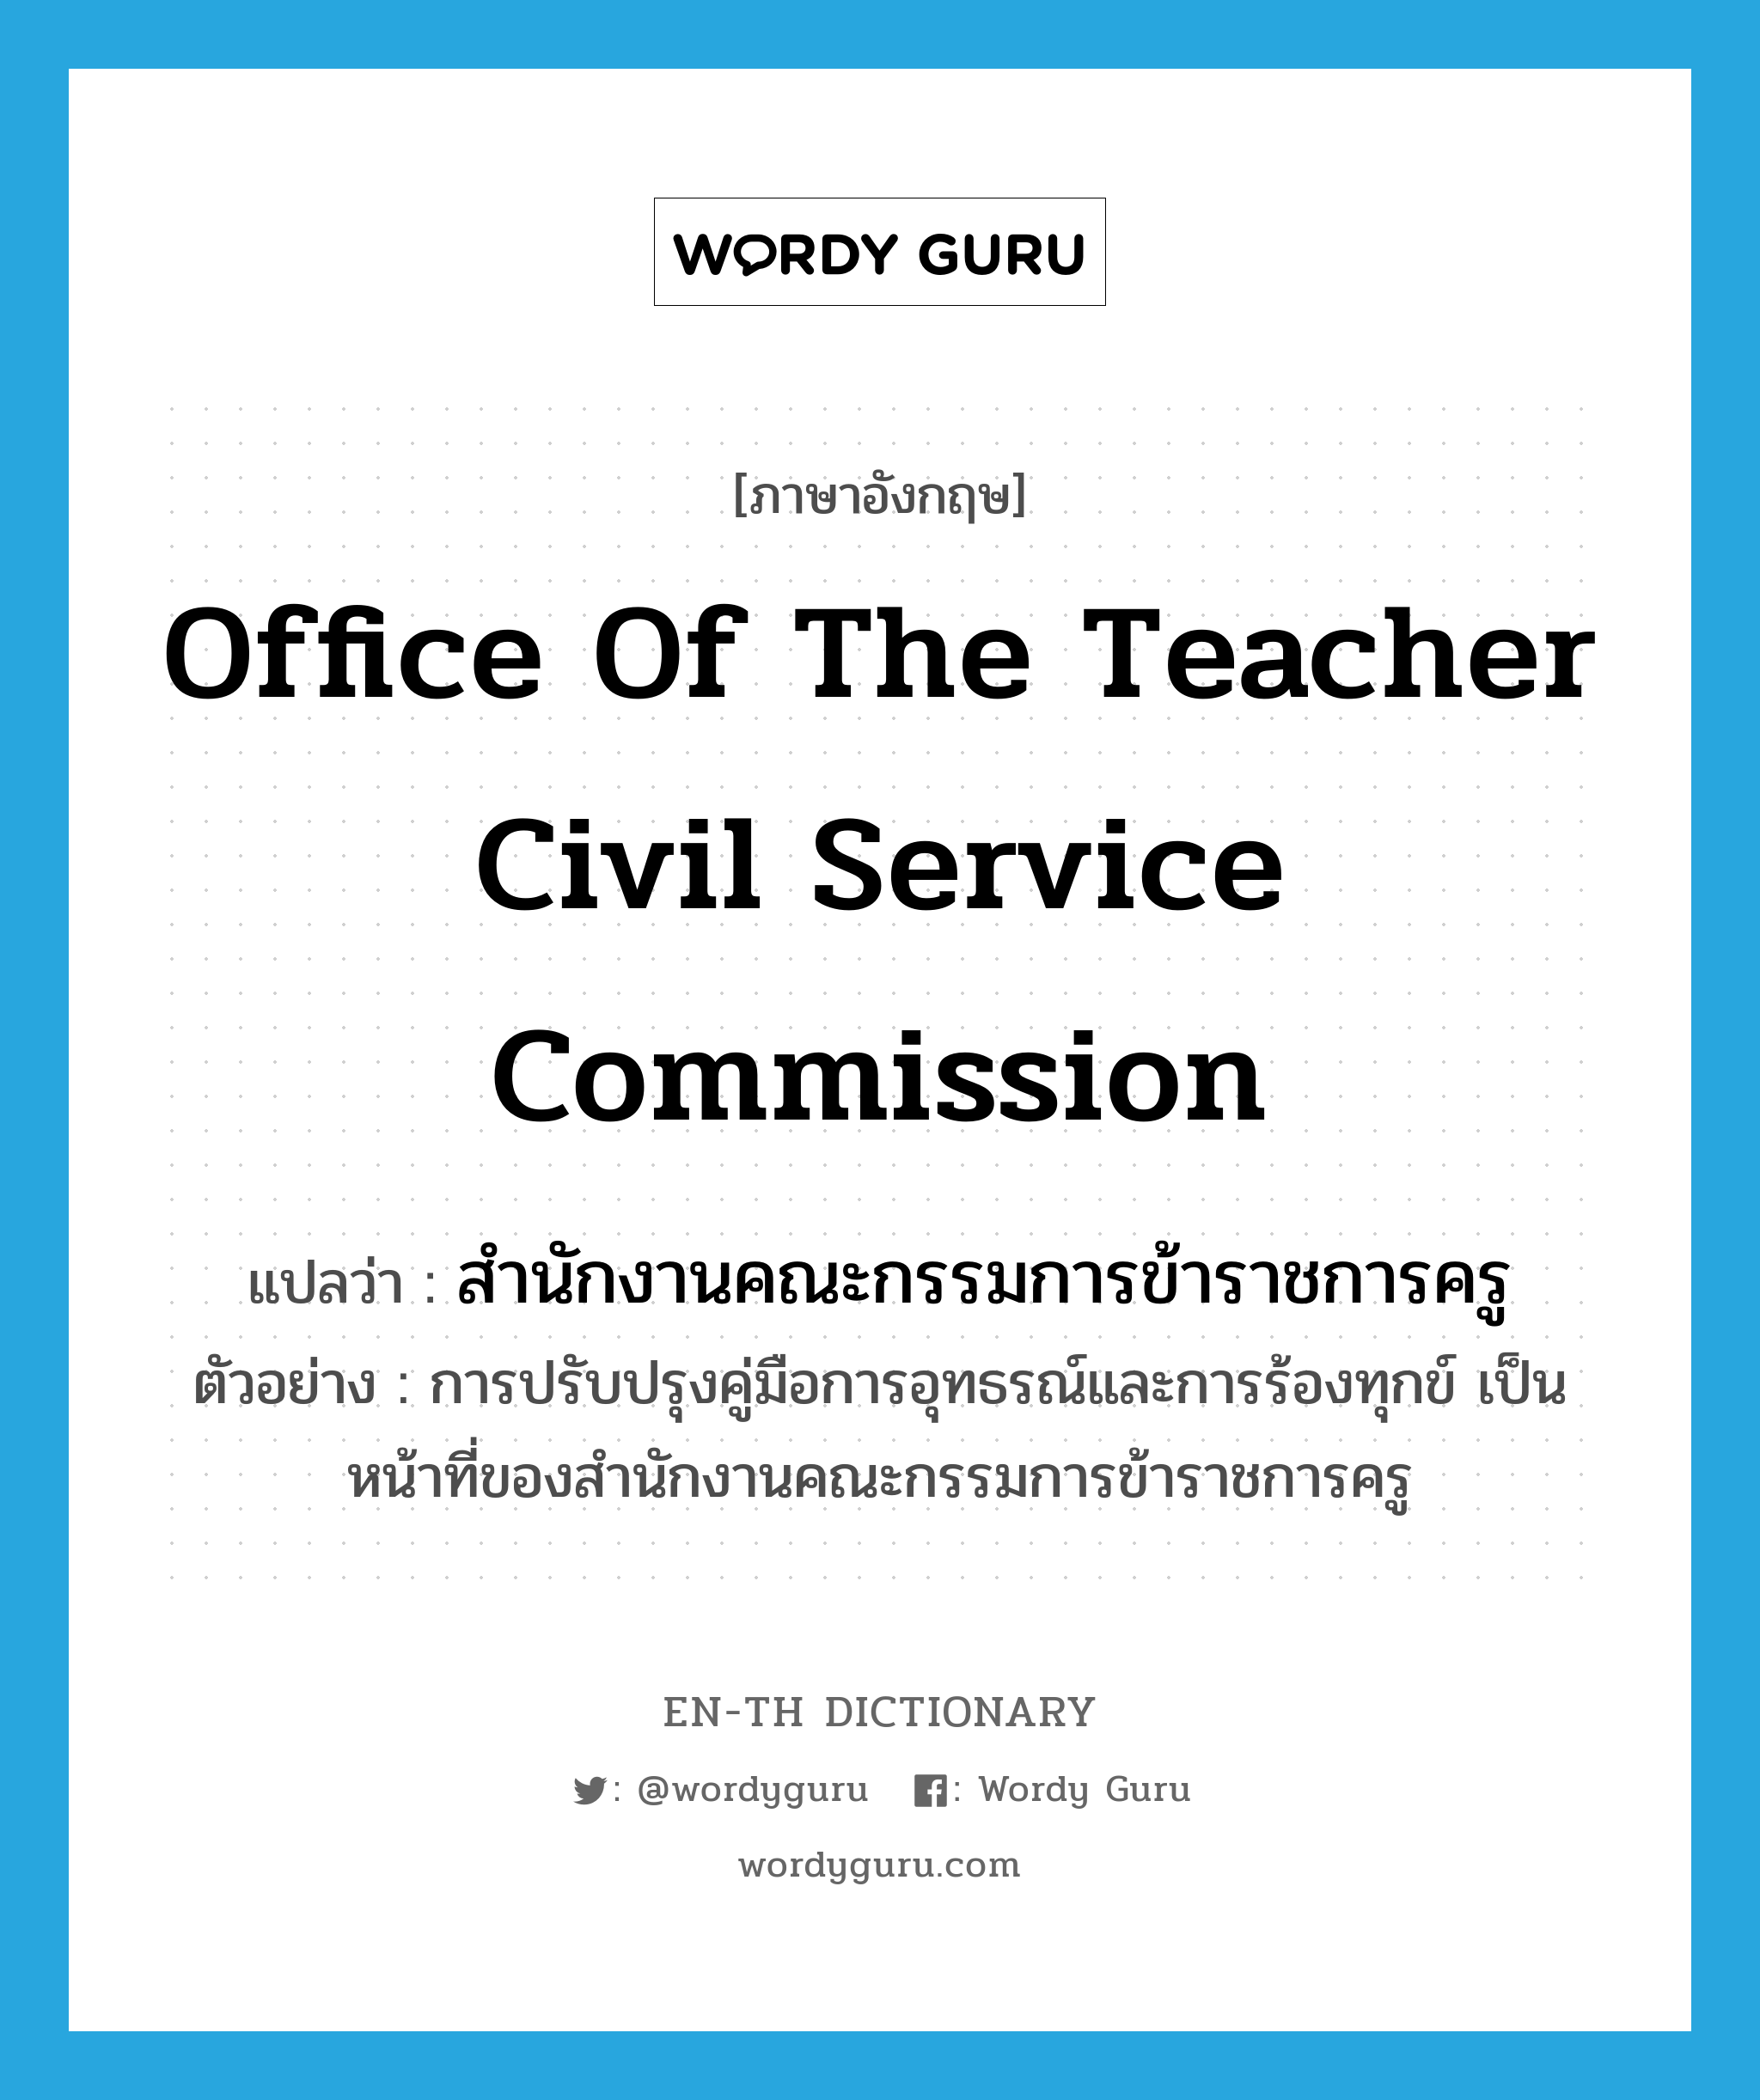 สำนักงานคณะกรรมการข้าราชการครู ภาษาอังกฤษ?, คำศัพท์ภาษาอังกฤษ สำนักงานคณะกรรมการข้าราชการครู แปลว่า Office of the Teacher Civil Service Commission ประเภท N ตัวอย่าง การปรับปรุงคู่มือการอุทธรณ์และการร้องทุกข์ เป็นหน้าที่ของสำนักงานคณะกรรมการข้าราชการครู หมวด N